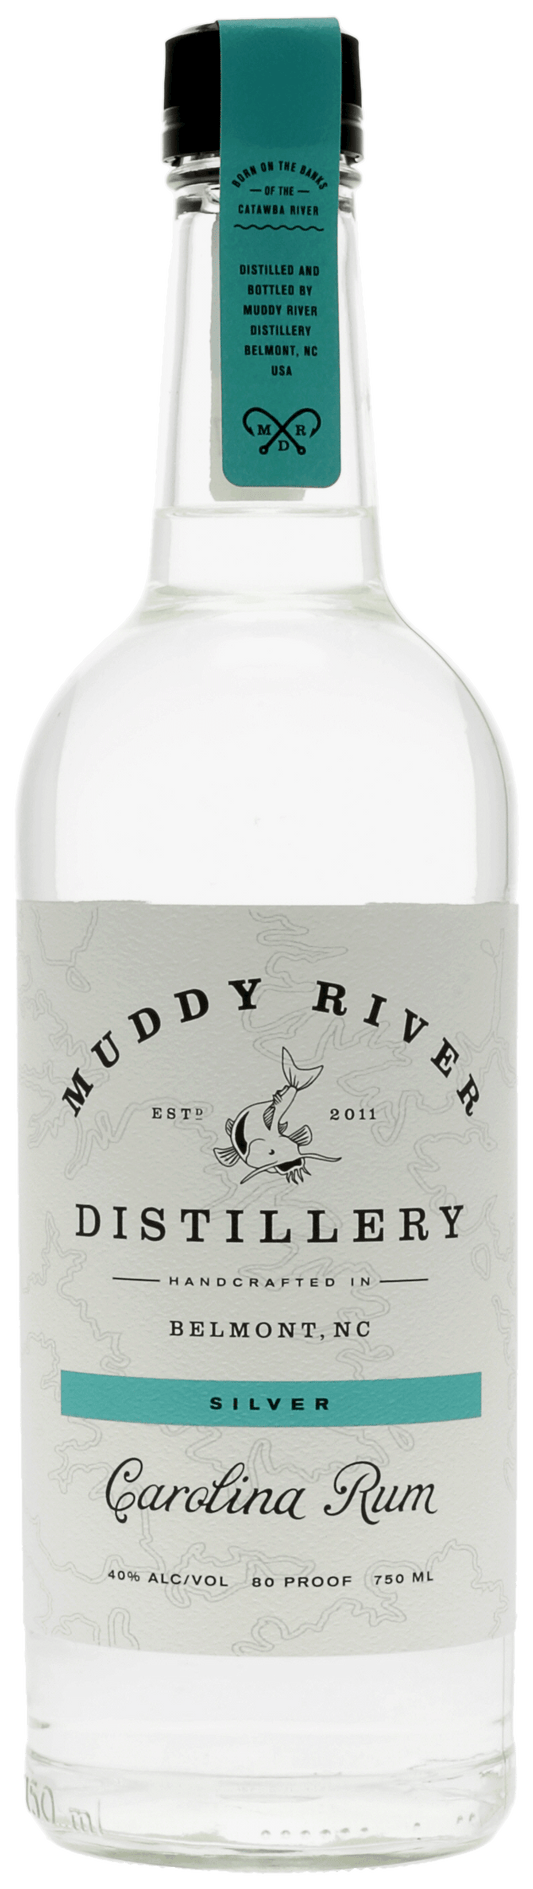 Silver Carolina Rum